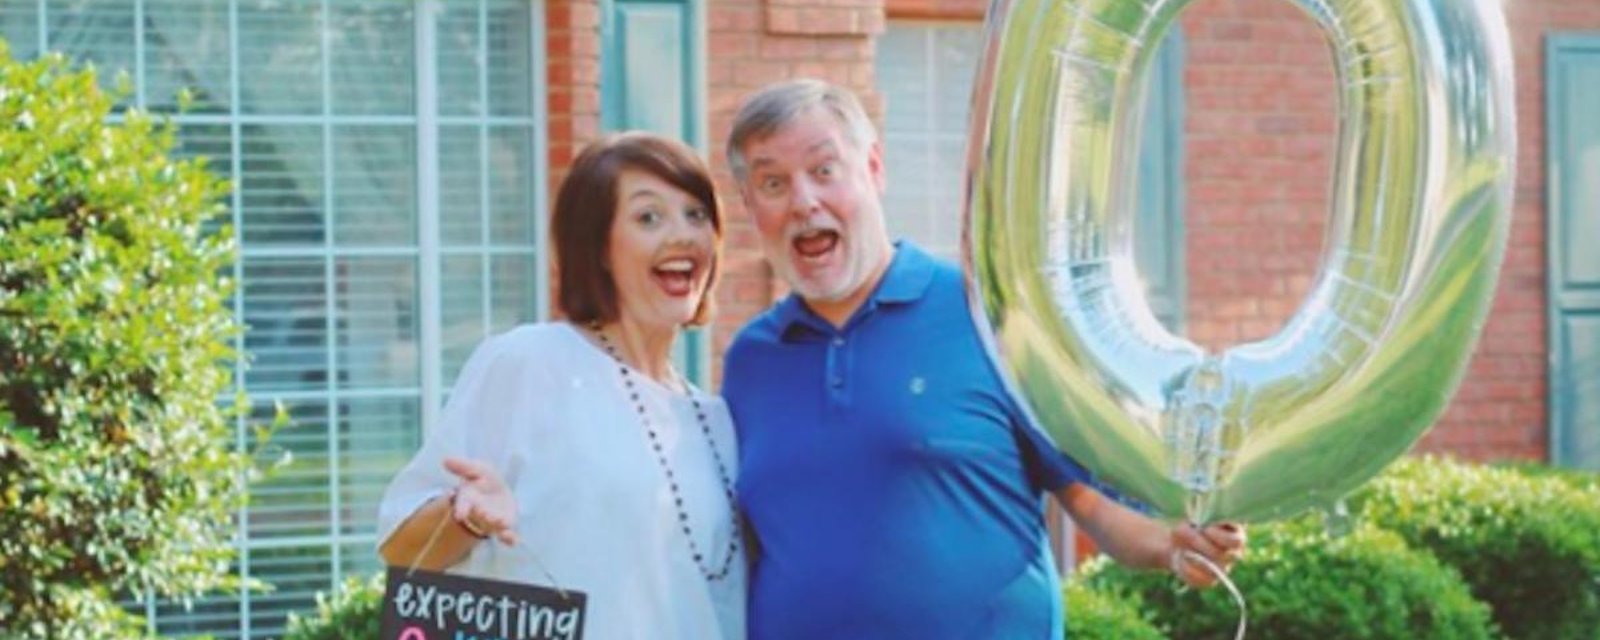 Ces parents ont pris des photos hilarantes pour célébrer le départ de leur fille de la maison familiale!